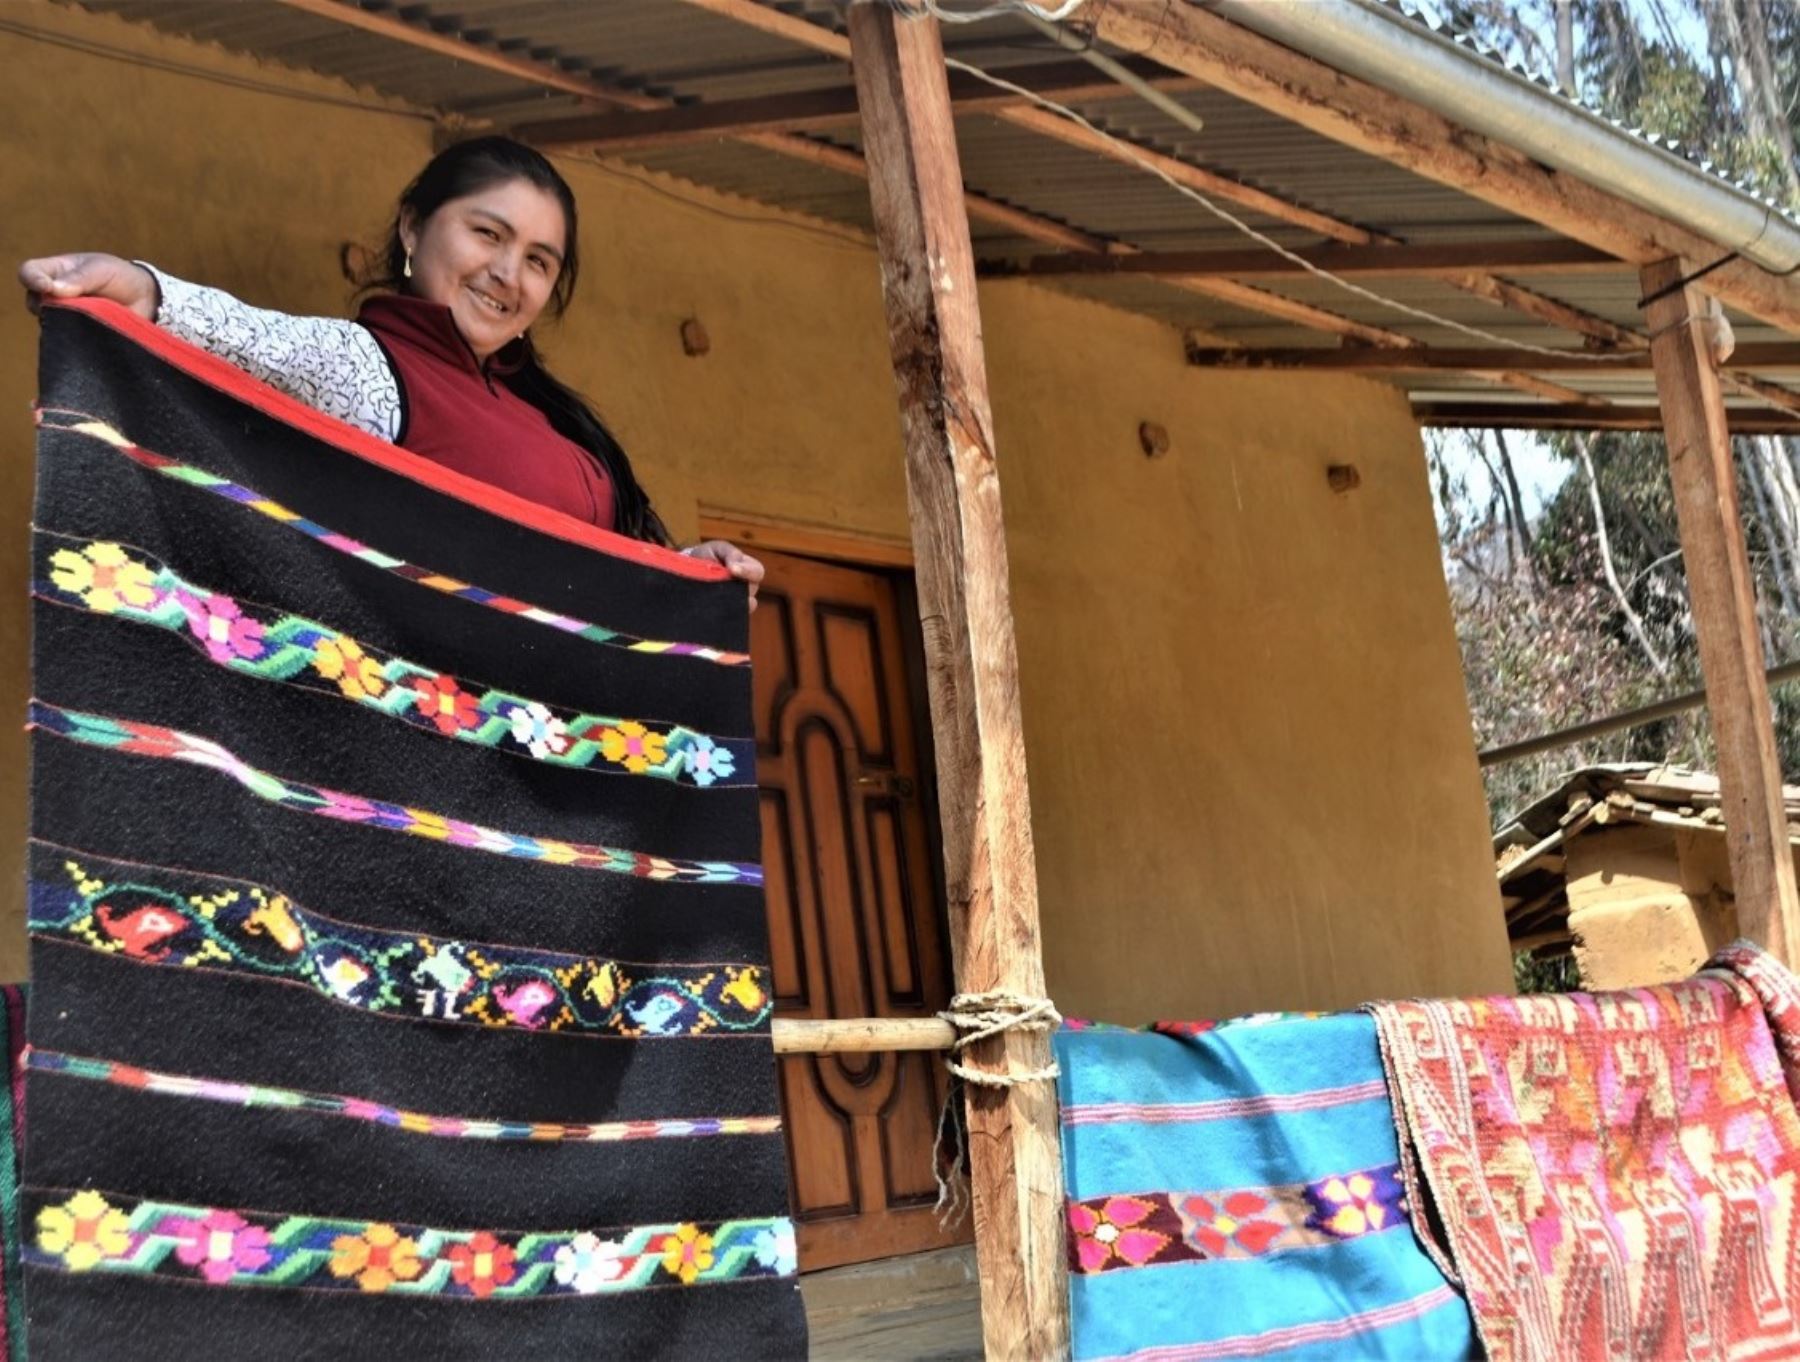 Conoce la historia de Santa Mirabal, la ejemplar mujer emprendedora de Huánuco que elabora hermosos tejidos y tiene una tienda que abrió gracias a los bonos entregados por el programa Juntos. ANDINA/Difusión